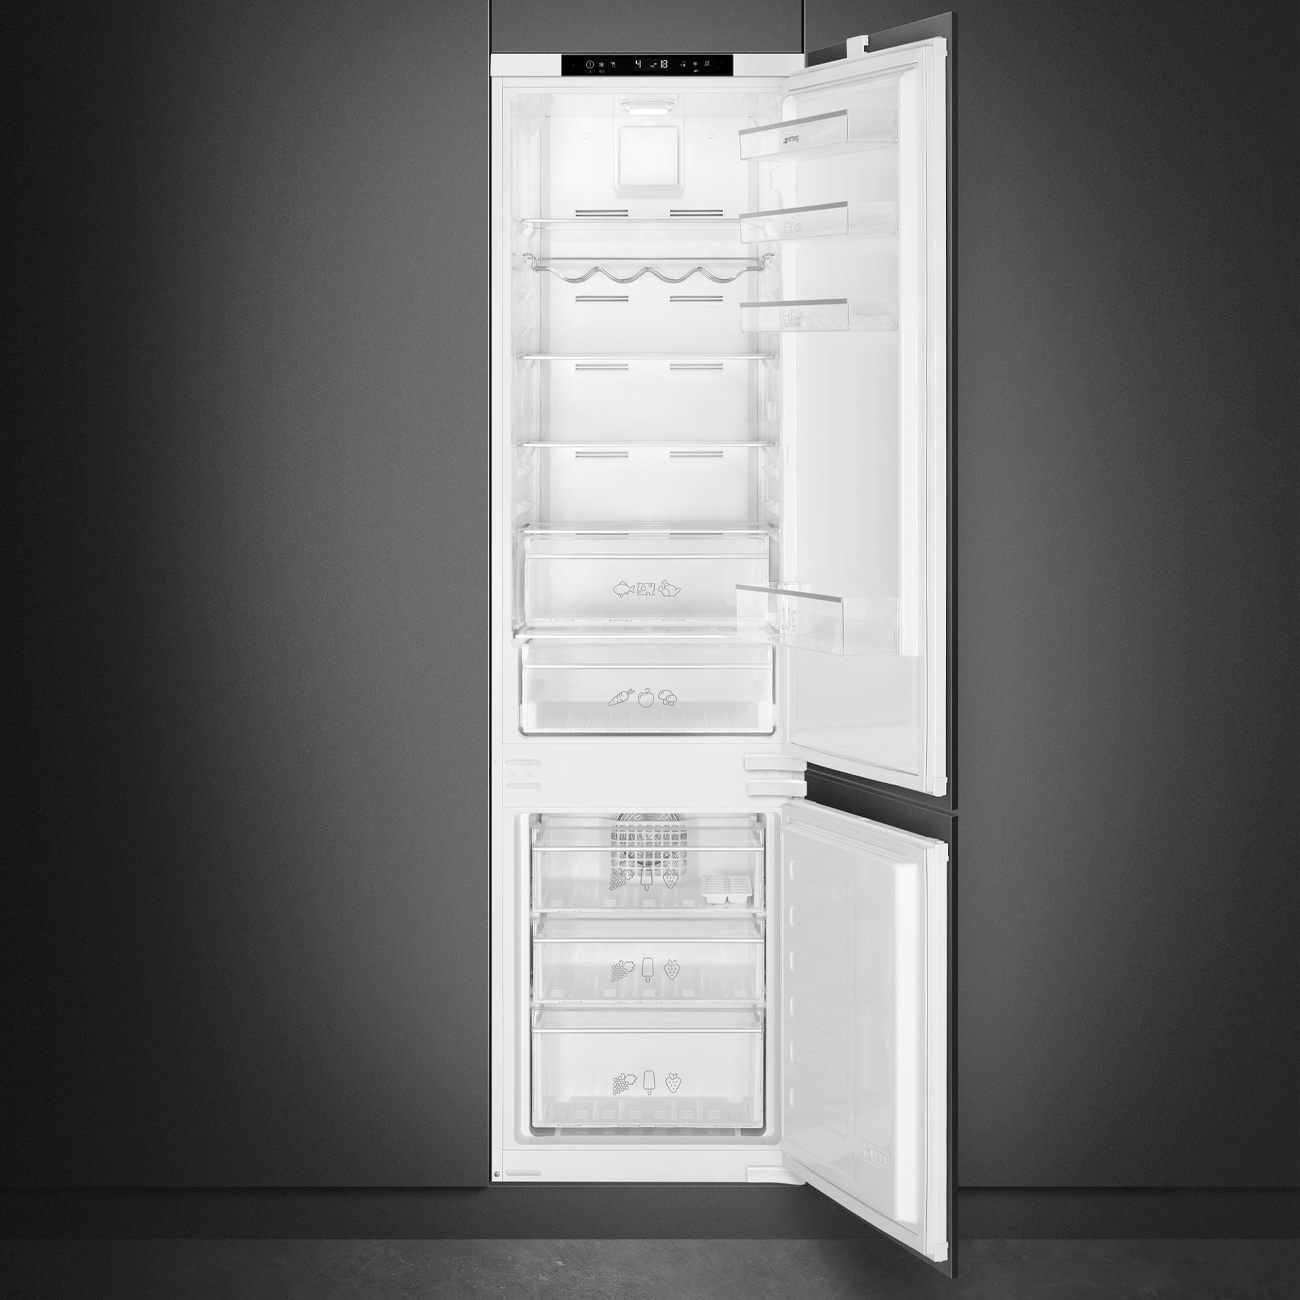 Koel-vriescombinatie Inbouw koelkast - Smeg_2